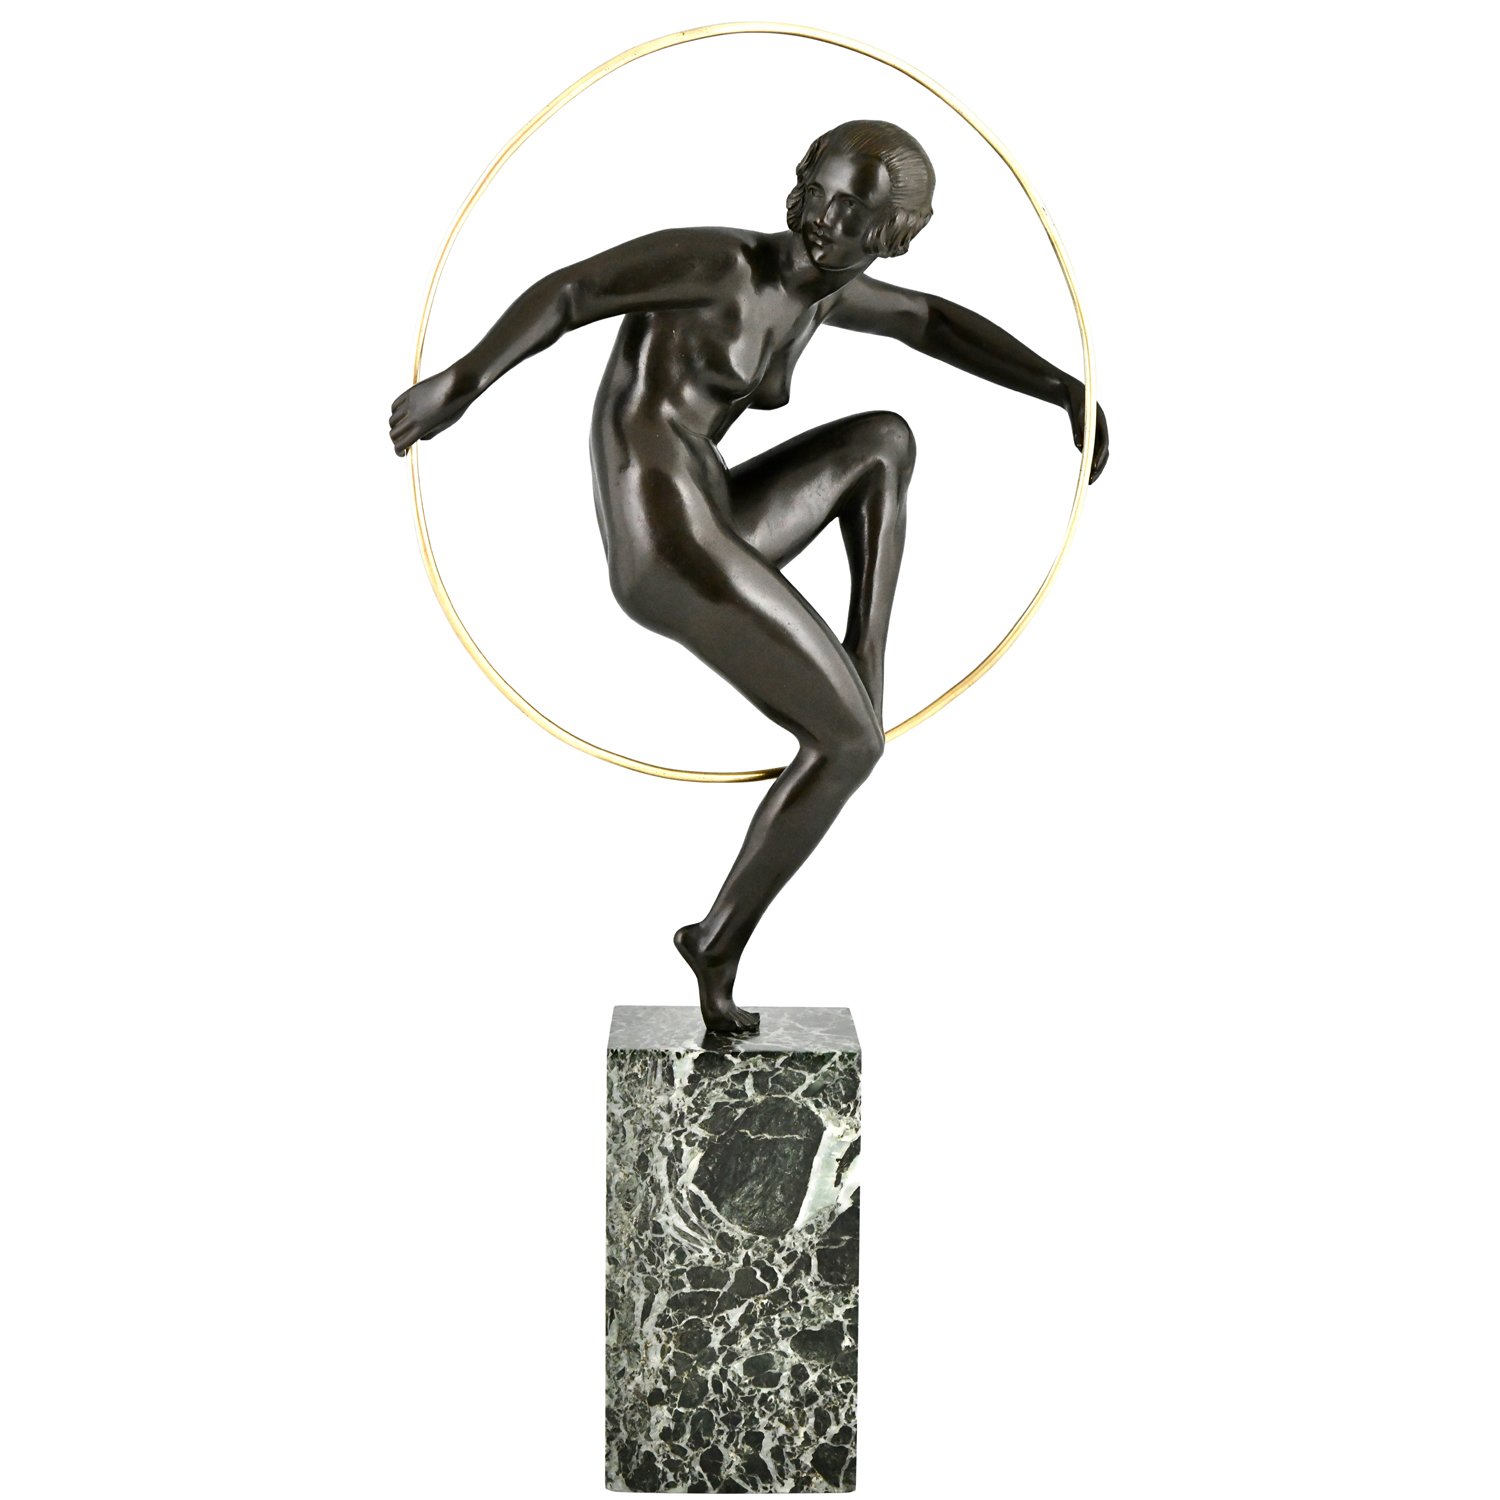 Art Deco bronze hoop dancer Marcel Andre Bouraine - 1